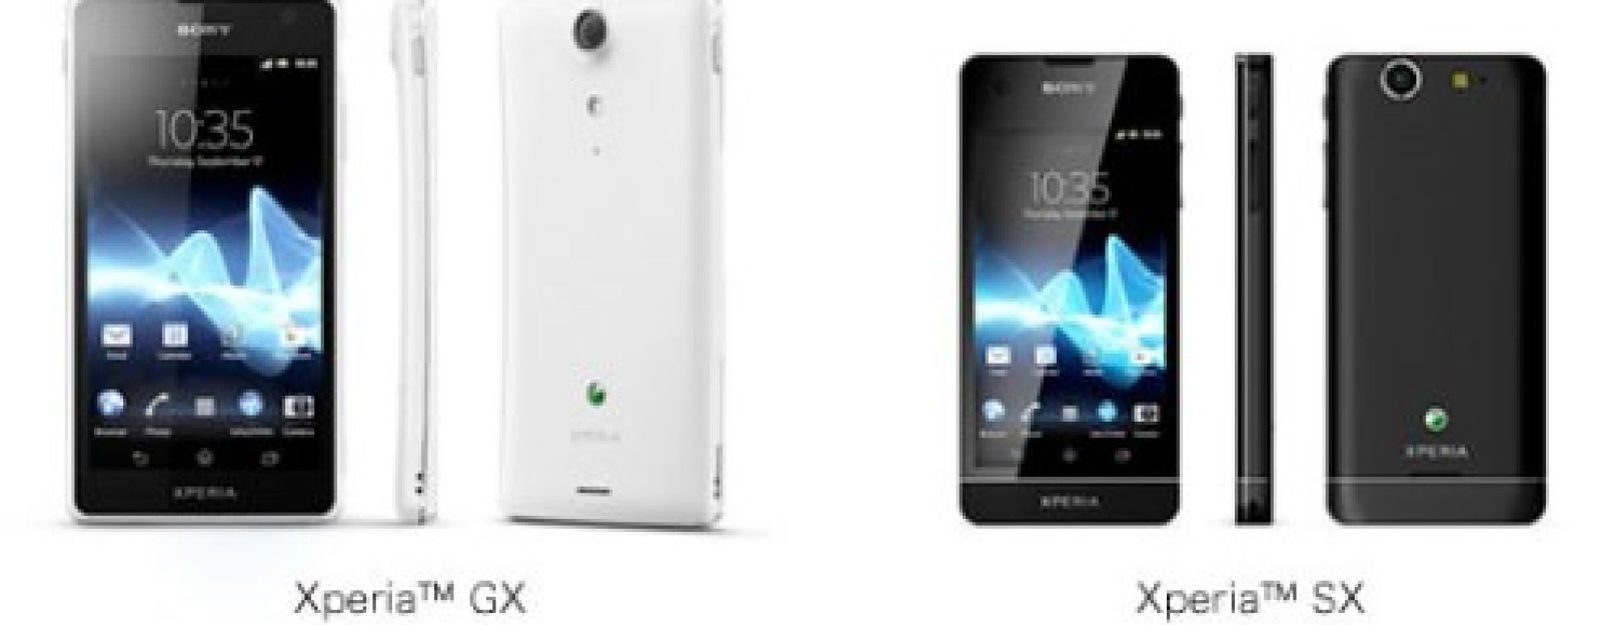 Foto: Xperia GX, el 'monstruo' de Sony para competir con el Galaxy S3 de Samsung